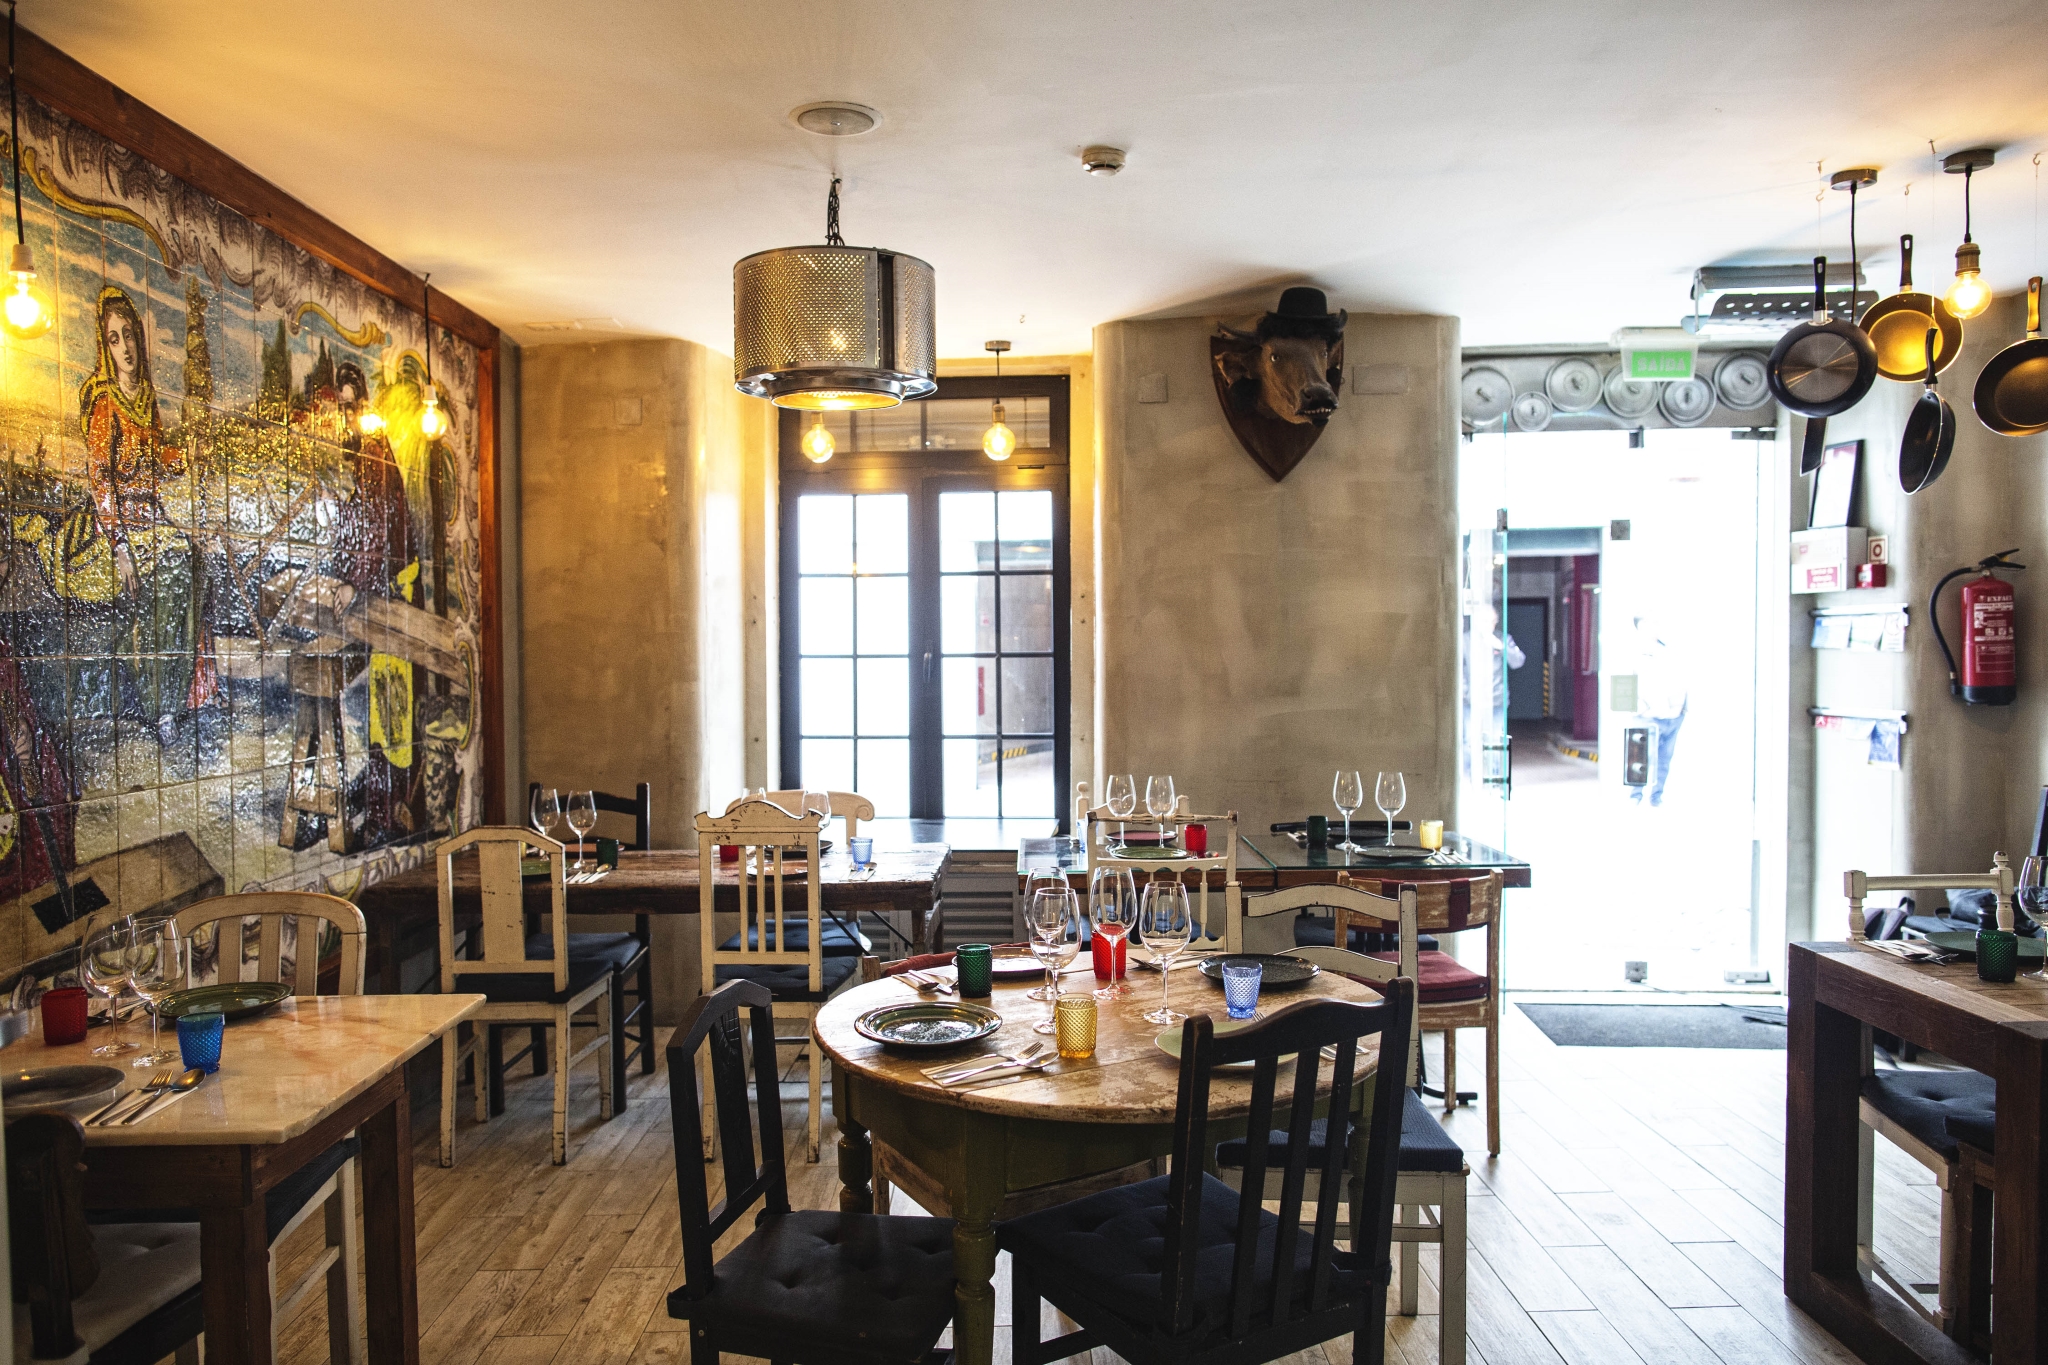 Os novos restaurantes de petiscos em Lisboa e Porto | Unibanco